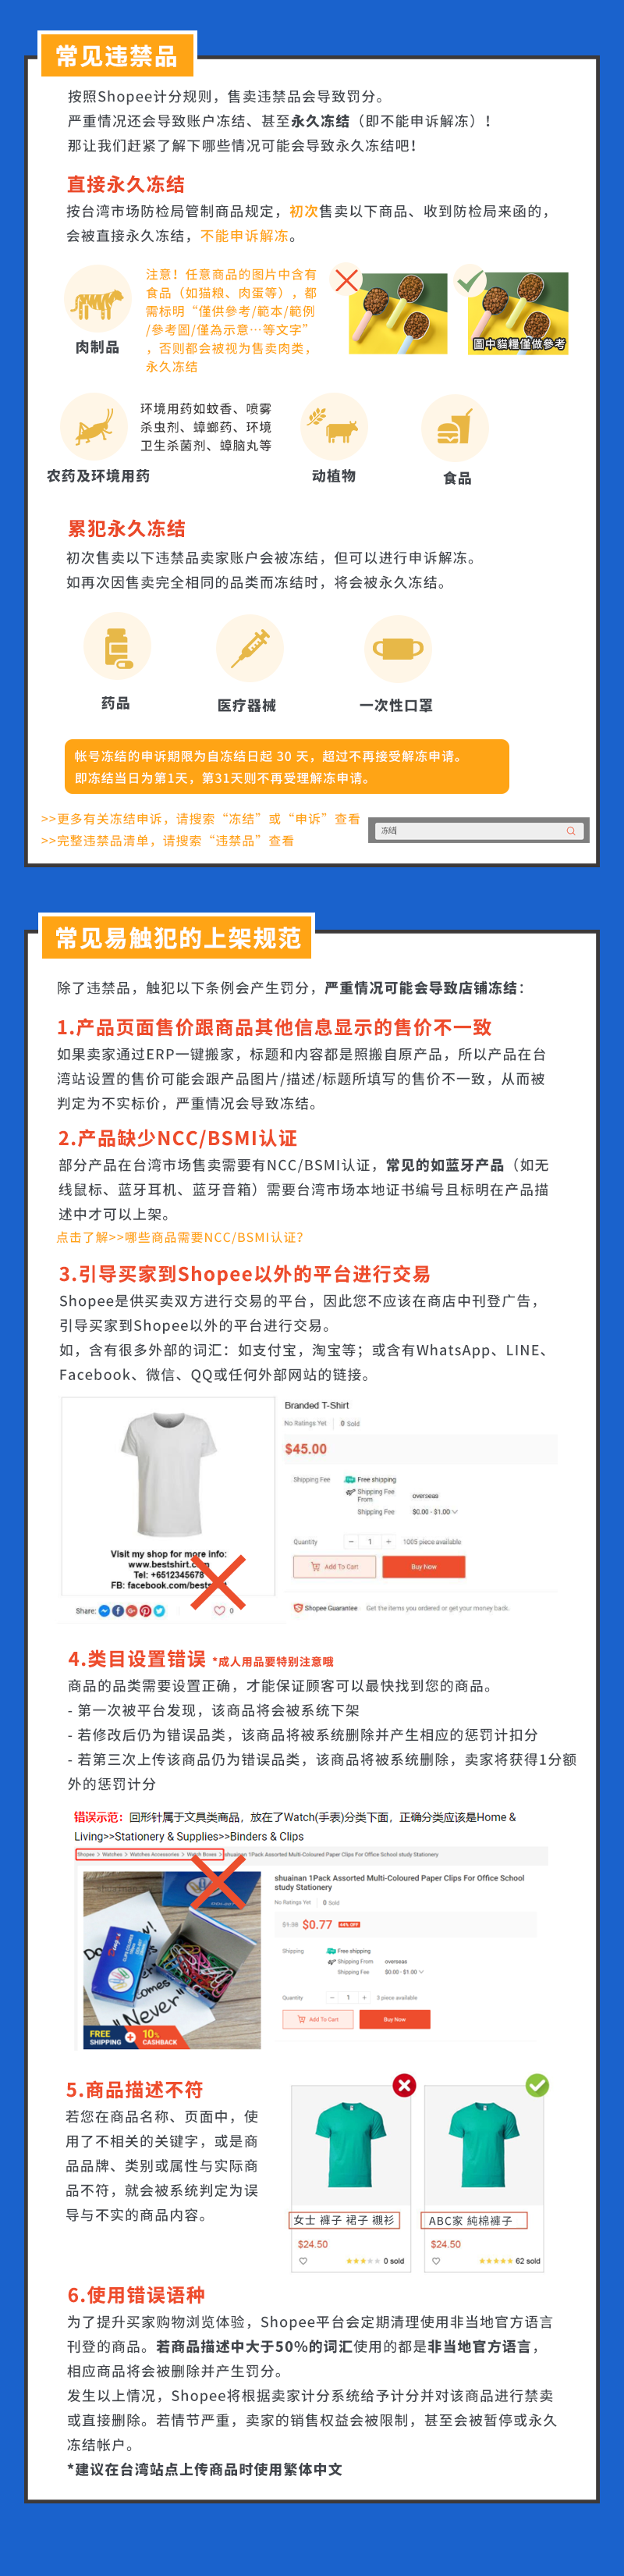 Shopee【台湾虾皮】致永久冻结的违禁行为一览